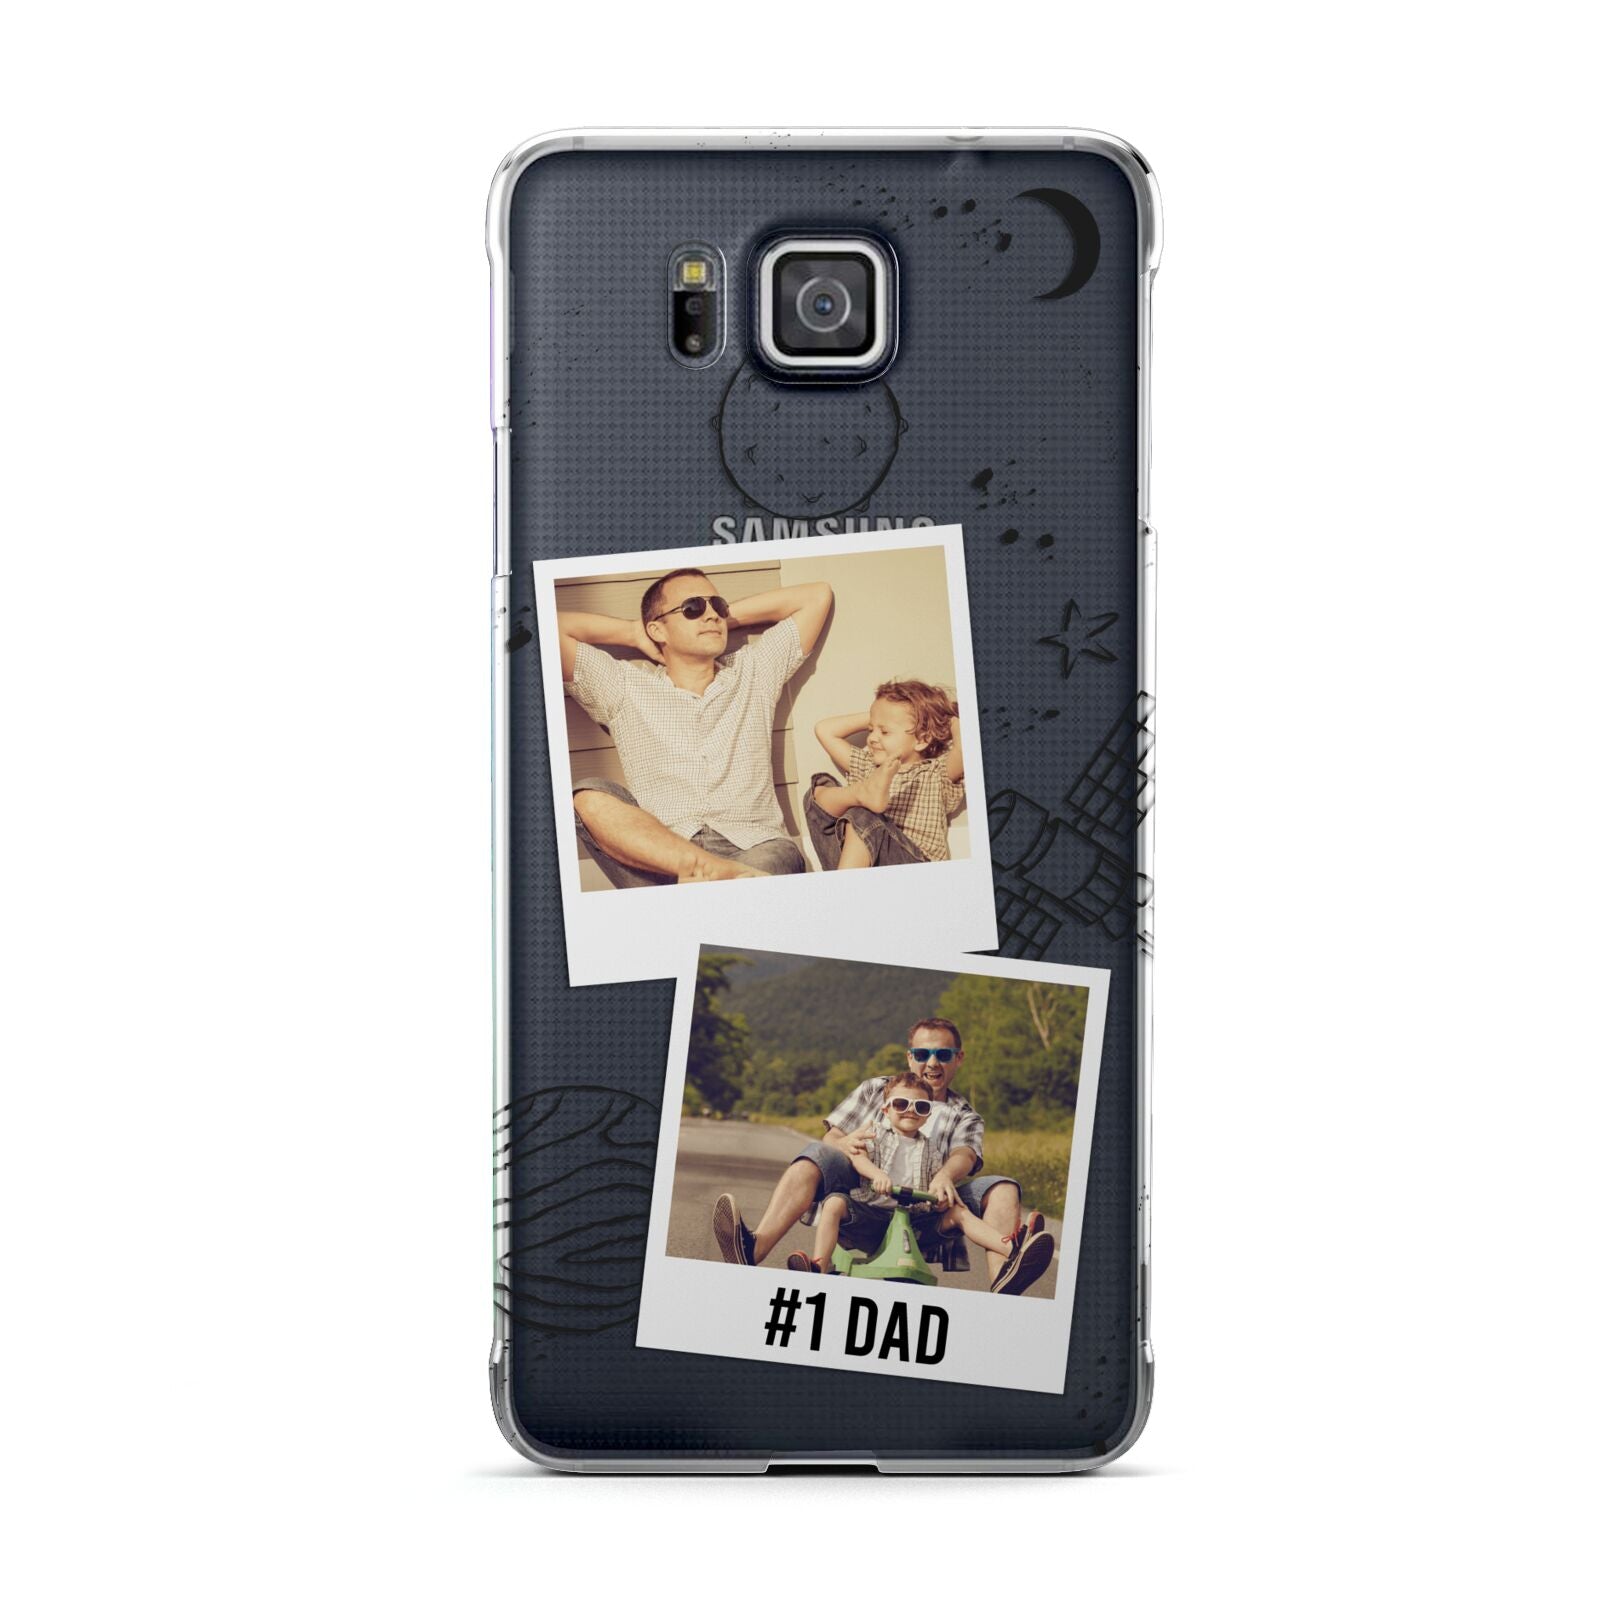 Personalised Dad Photos Samsung Galaxy Alpha Case